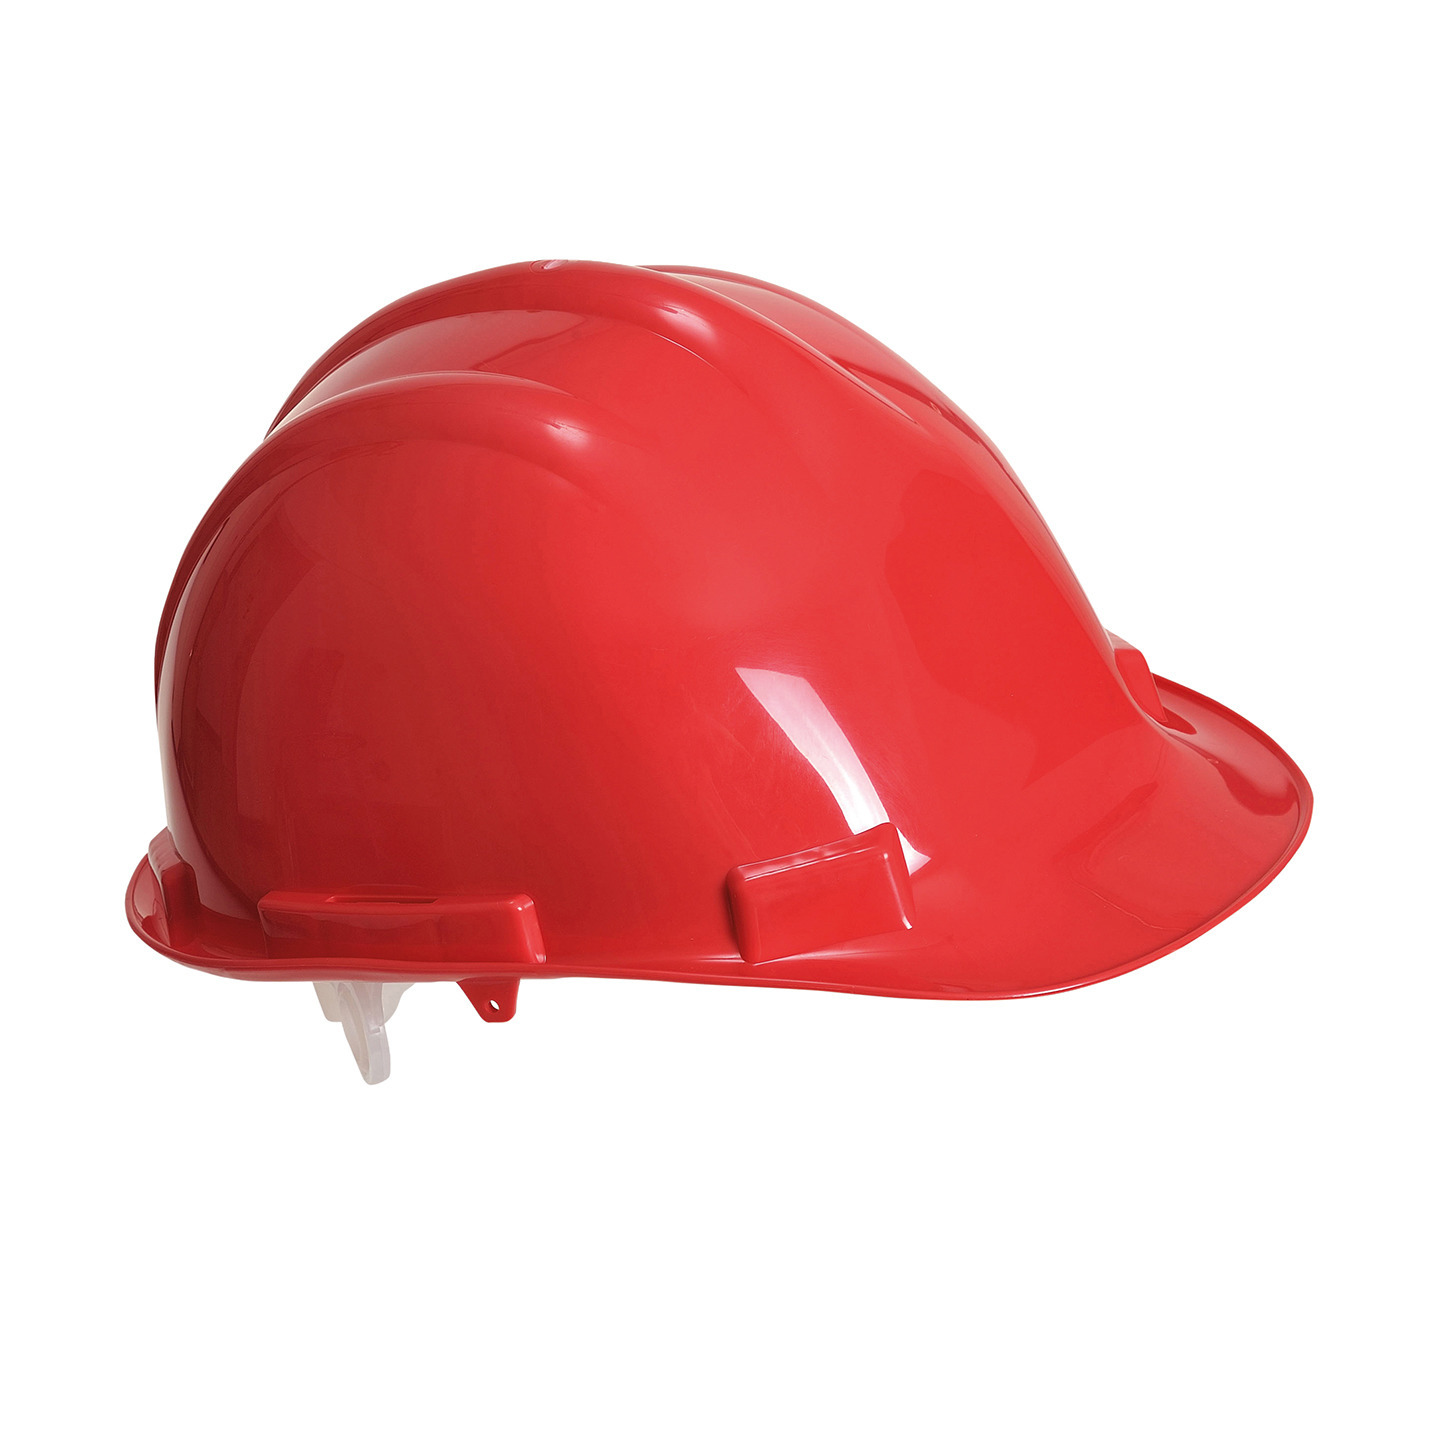 Set van 2x stuks veiligheidshelmen-bouwhelmen hoofdbescherming rood verstelbaar 55-62 cm